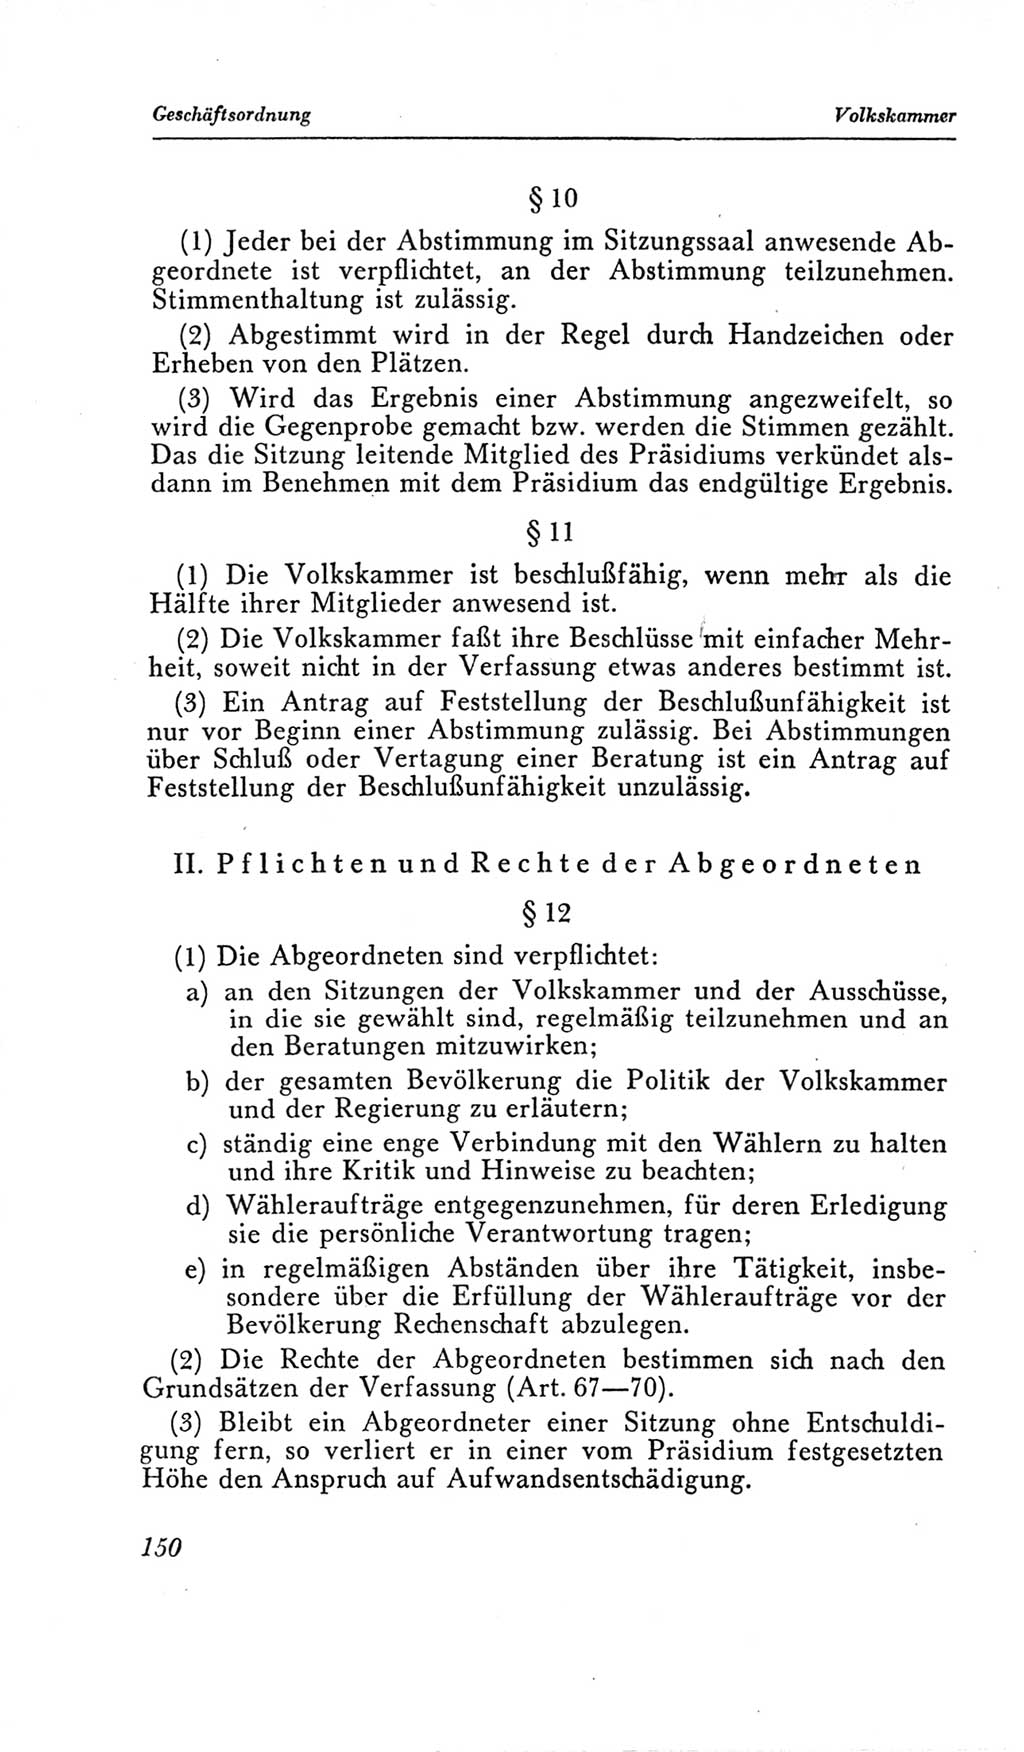 Handbuch der Volkskammer (VK) der Deutschen Demokratischen Republik (DDR), 2. Wahlperiode 1954-1958, Seite 150 (Hdb. VK. DDR, 2. WP. 1954-1958, S. 150)